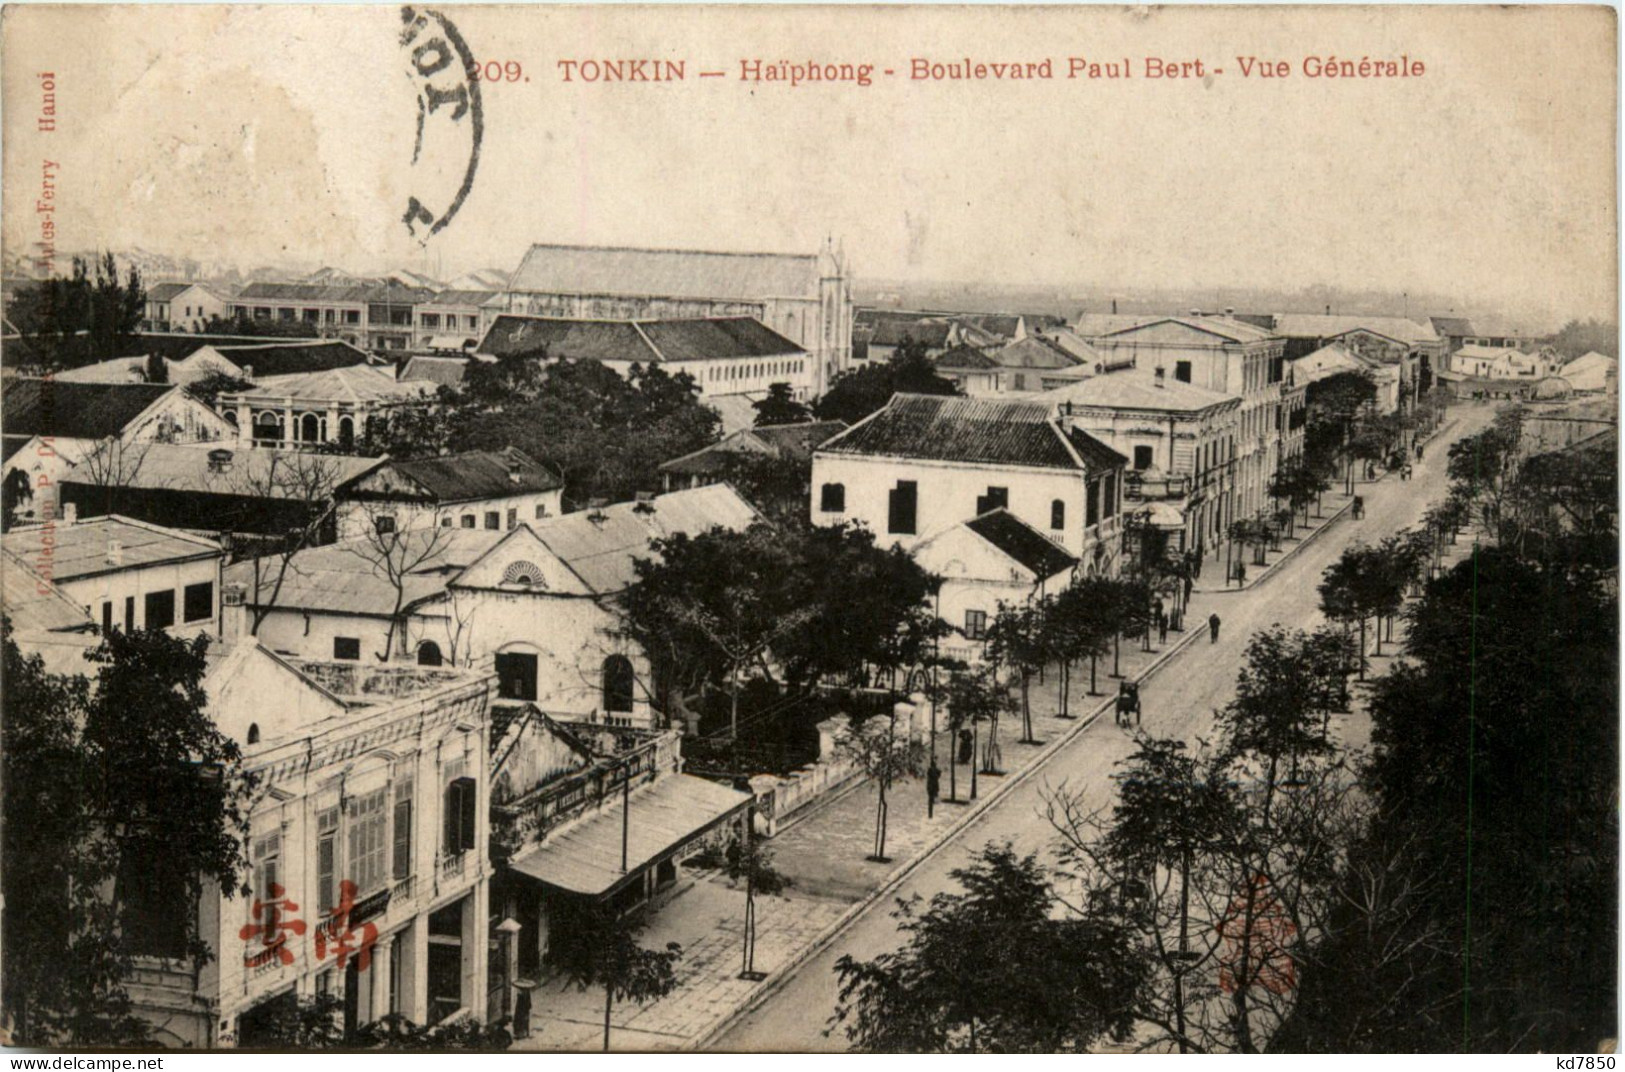 Tonkin - Haiphong - Boulevard Paul Bert - Viêt-Nam